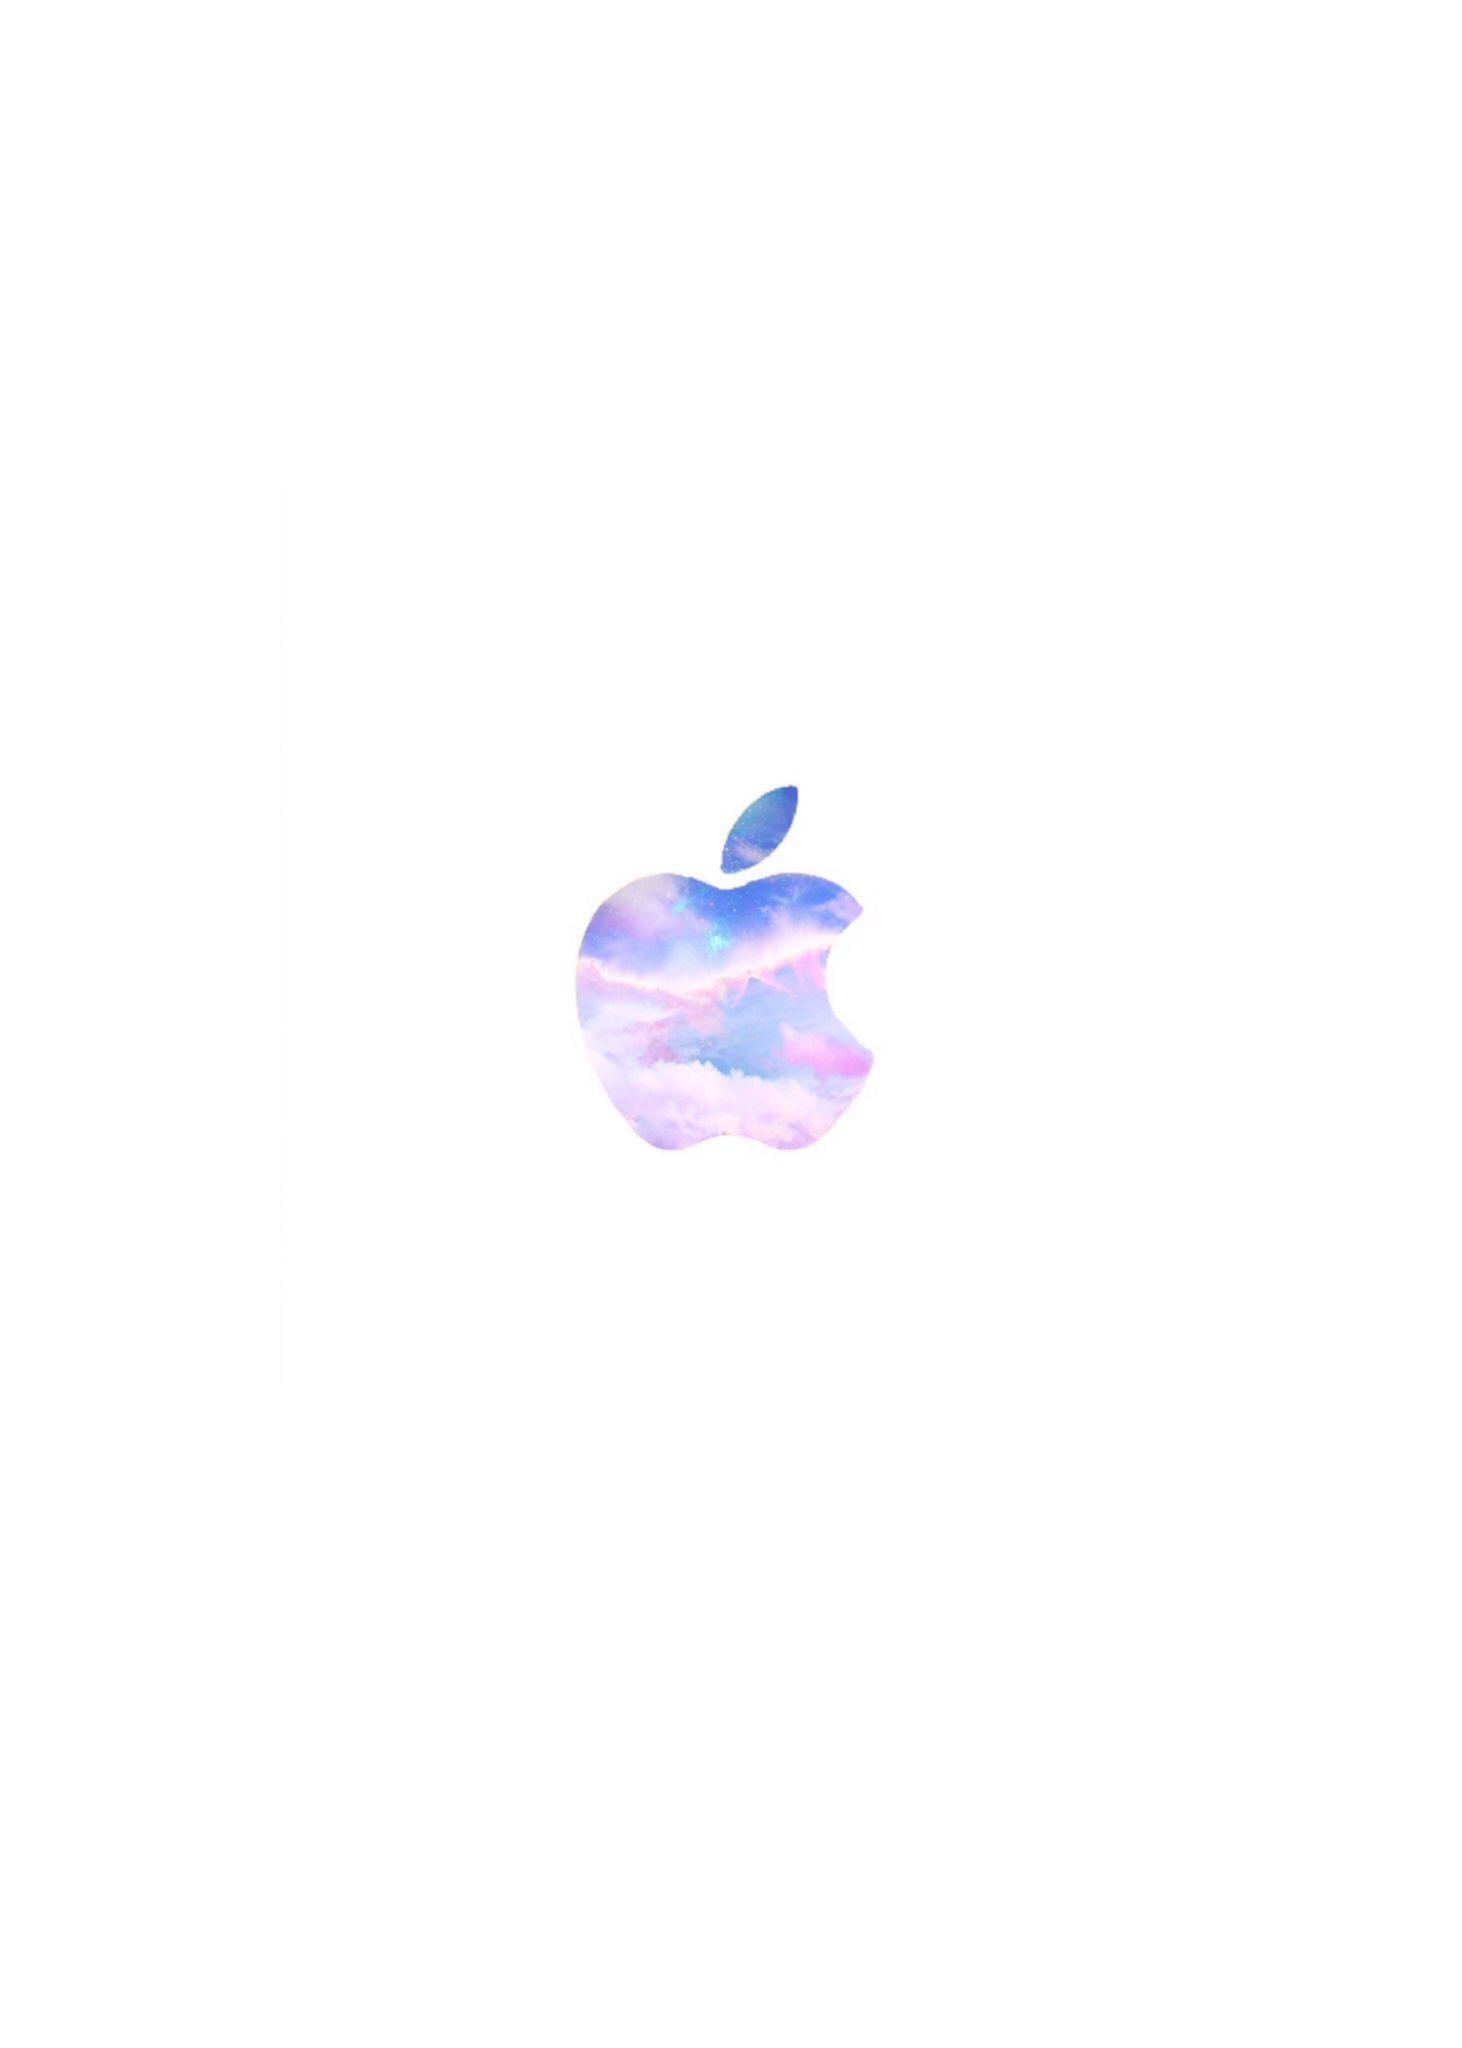 Galxay Apple Logo - Galaxy Apple Logo. Apple Logos. Pantalla, Logotipos, Fondos de